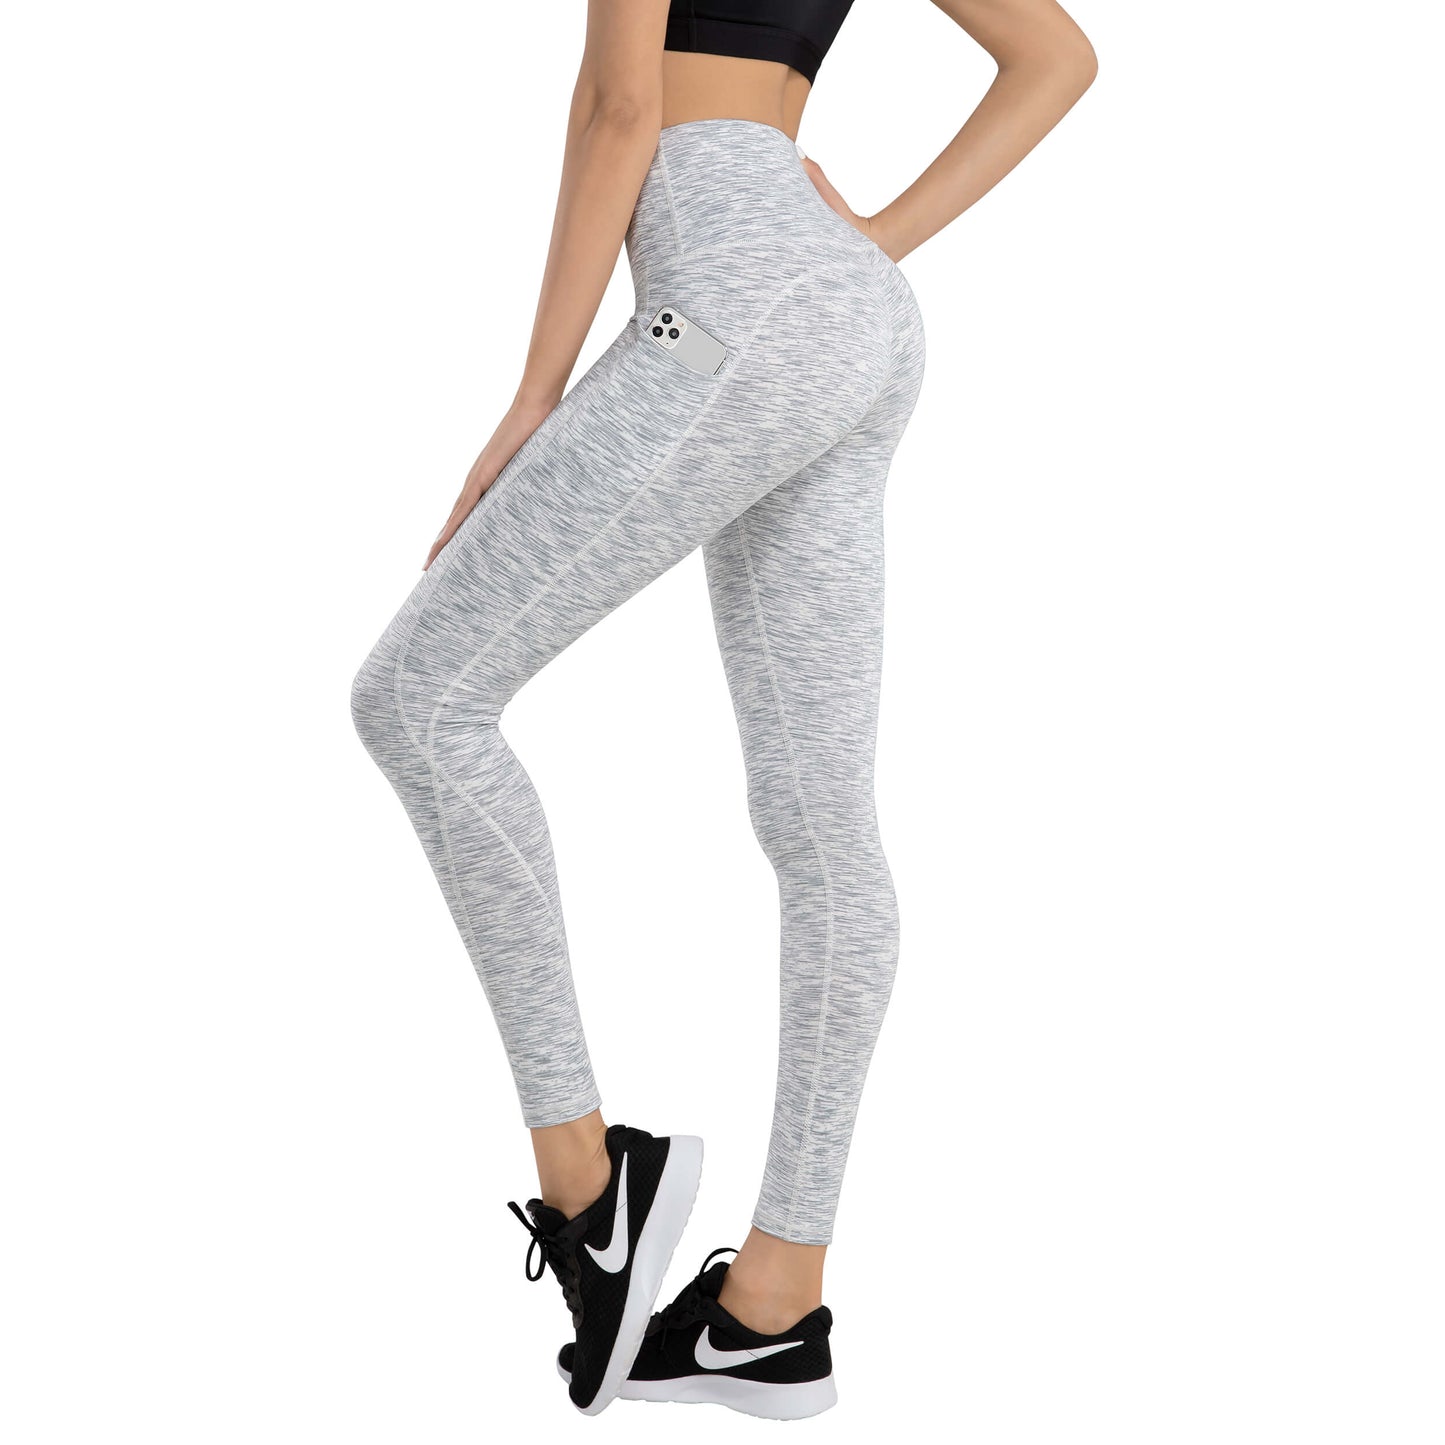 iKeep<sup>&reg;</sup> High Waist Yoga Pants for women-Satin printed